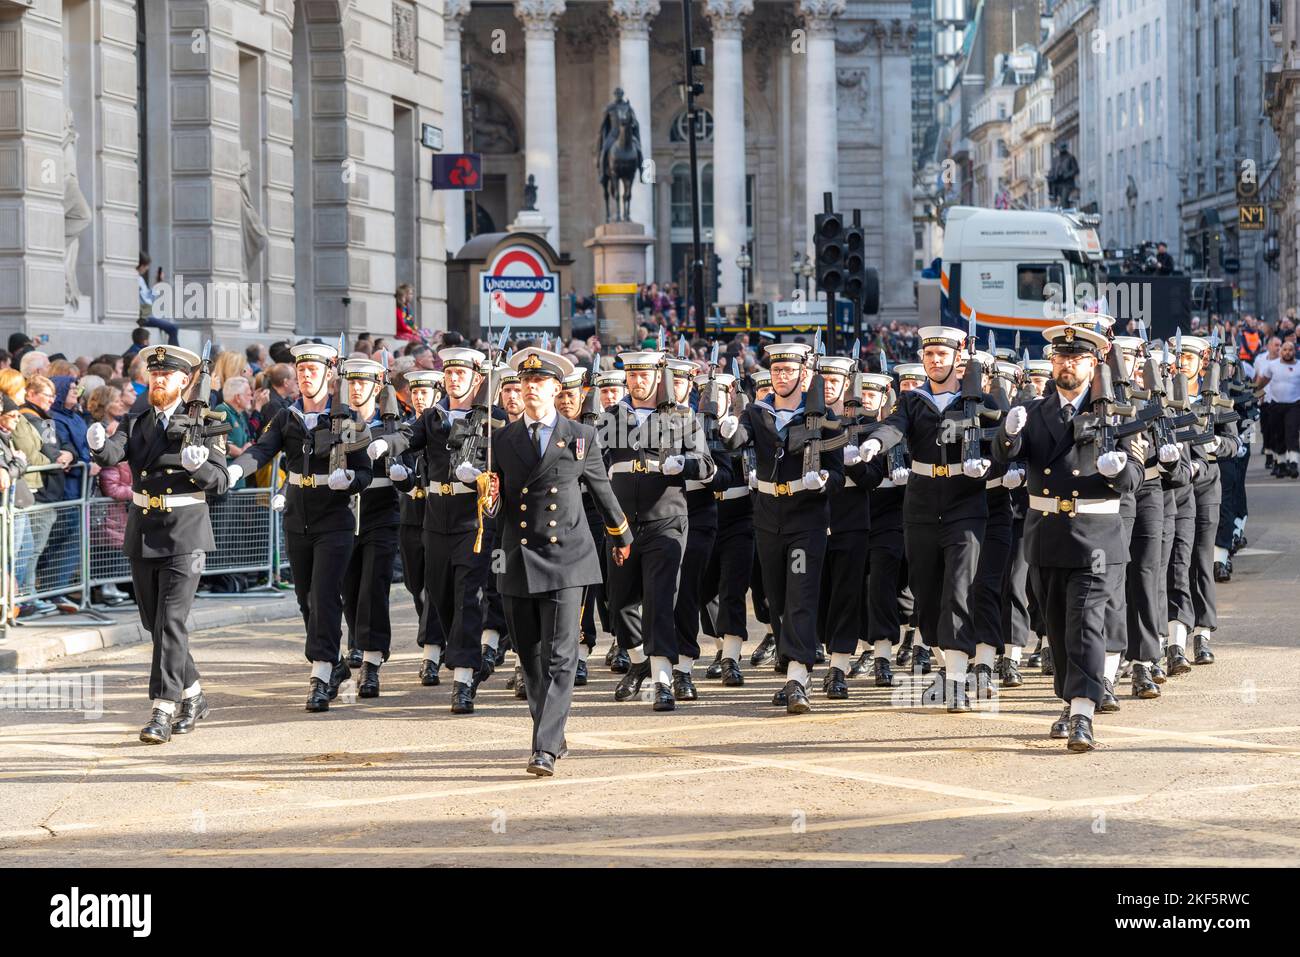 Royal Navy, HMS-Präsident, marschierende Gruppe bei der Lord Mayor's Show Parade in der City of London, Großbritannien Stockfoto